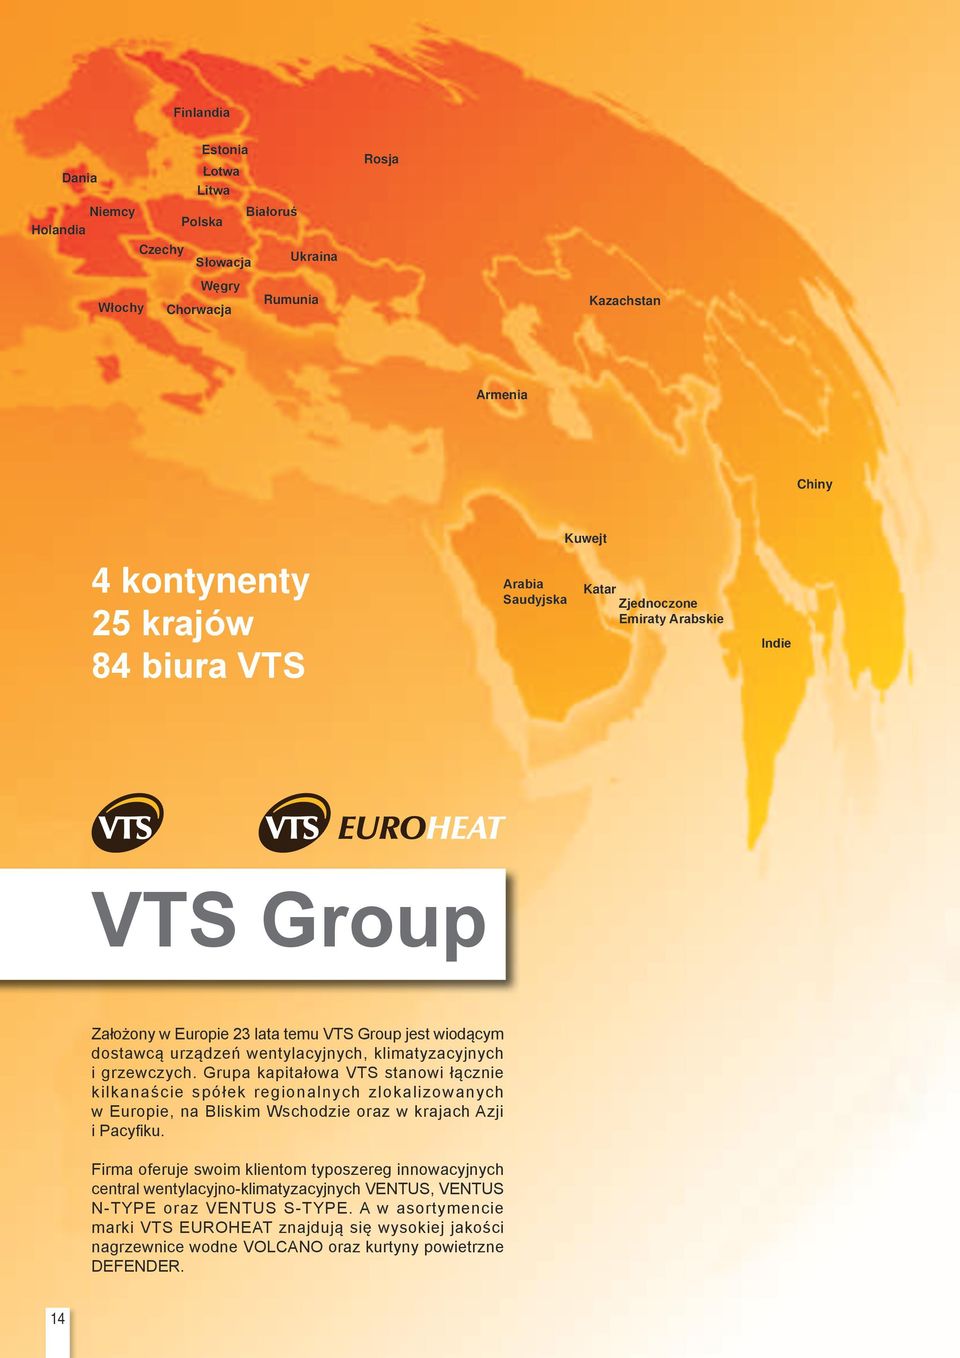 Grupa kapitałowa VTS stanowi łącznie kilkanaście spółek regionalnych zlokalizowanych w Europie, na Bliskim Wschodzie oraz w krajach Azji i Pacyfiku.